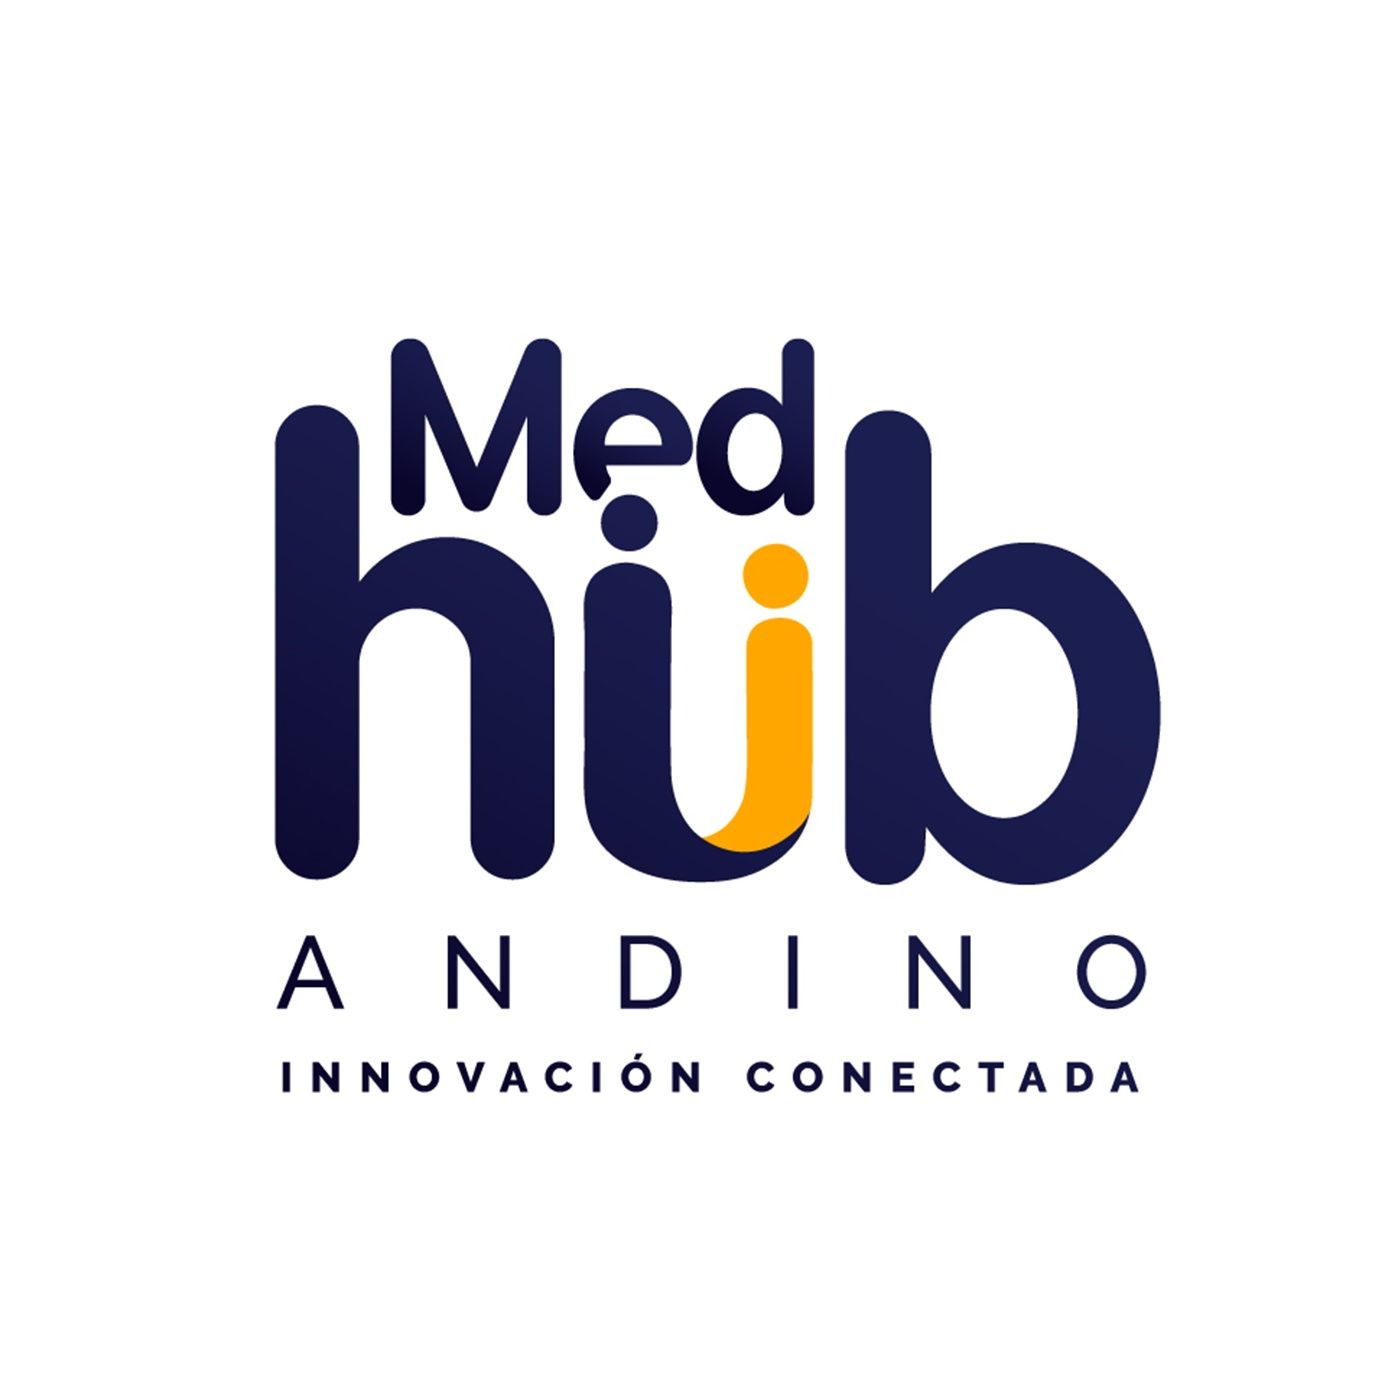 MedHub Andino